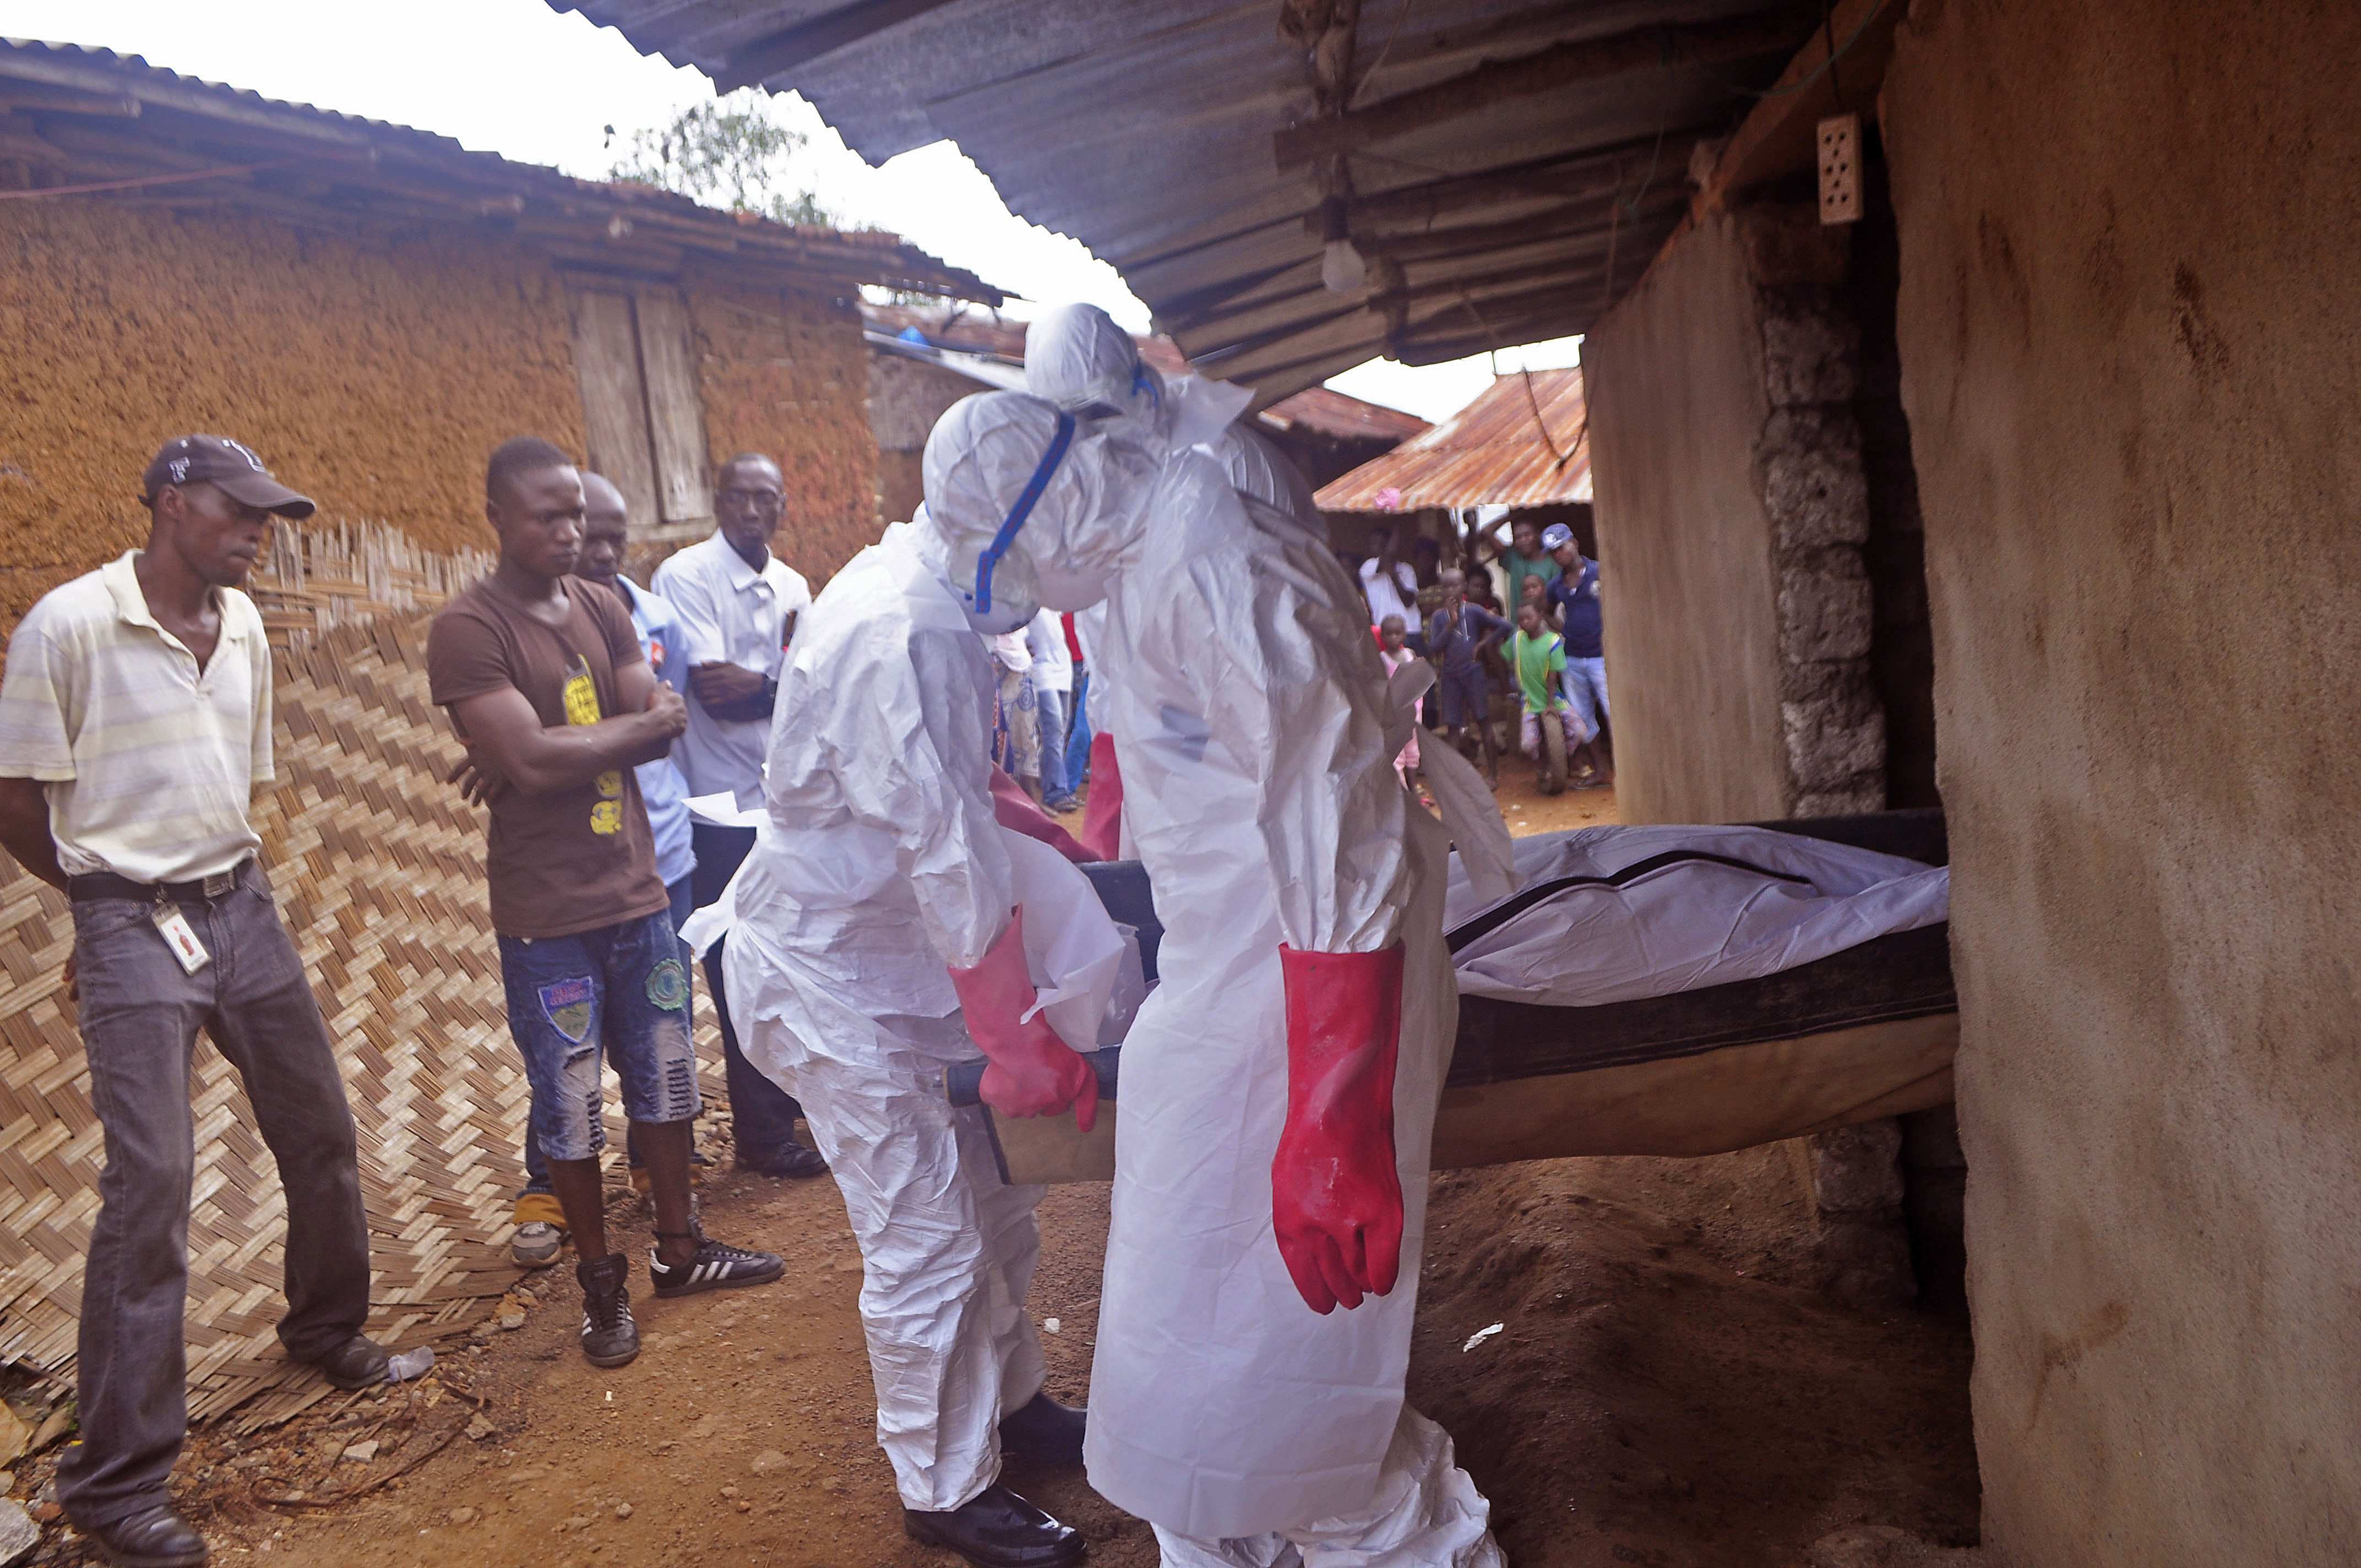 Mest googlade fråga som börjar med "Vad...": Vad är ebola? 